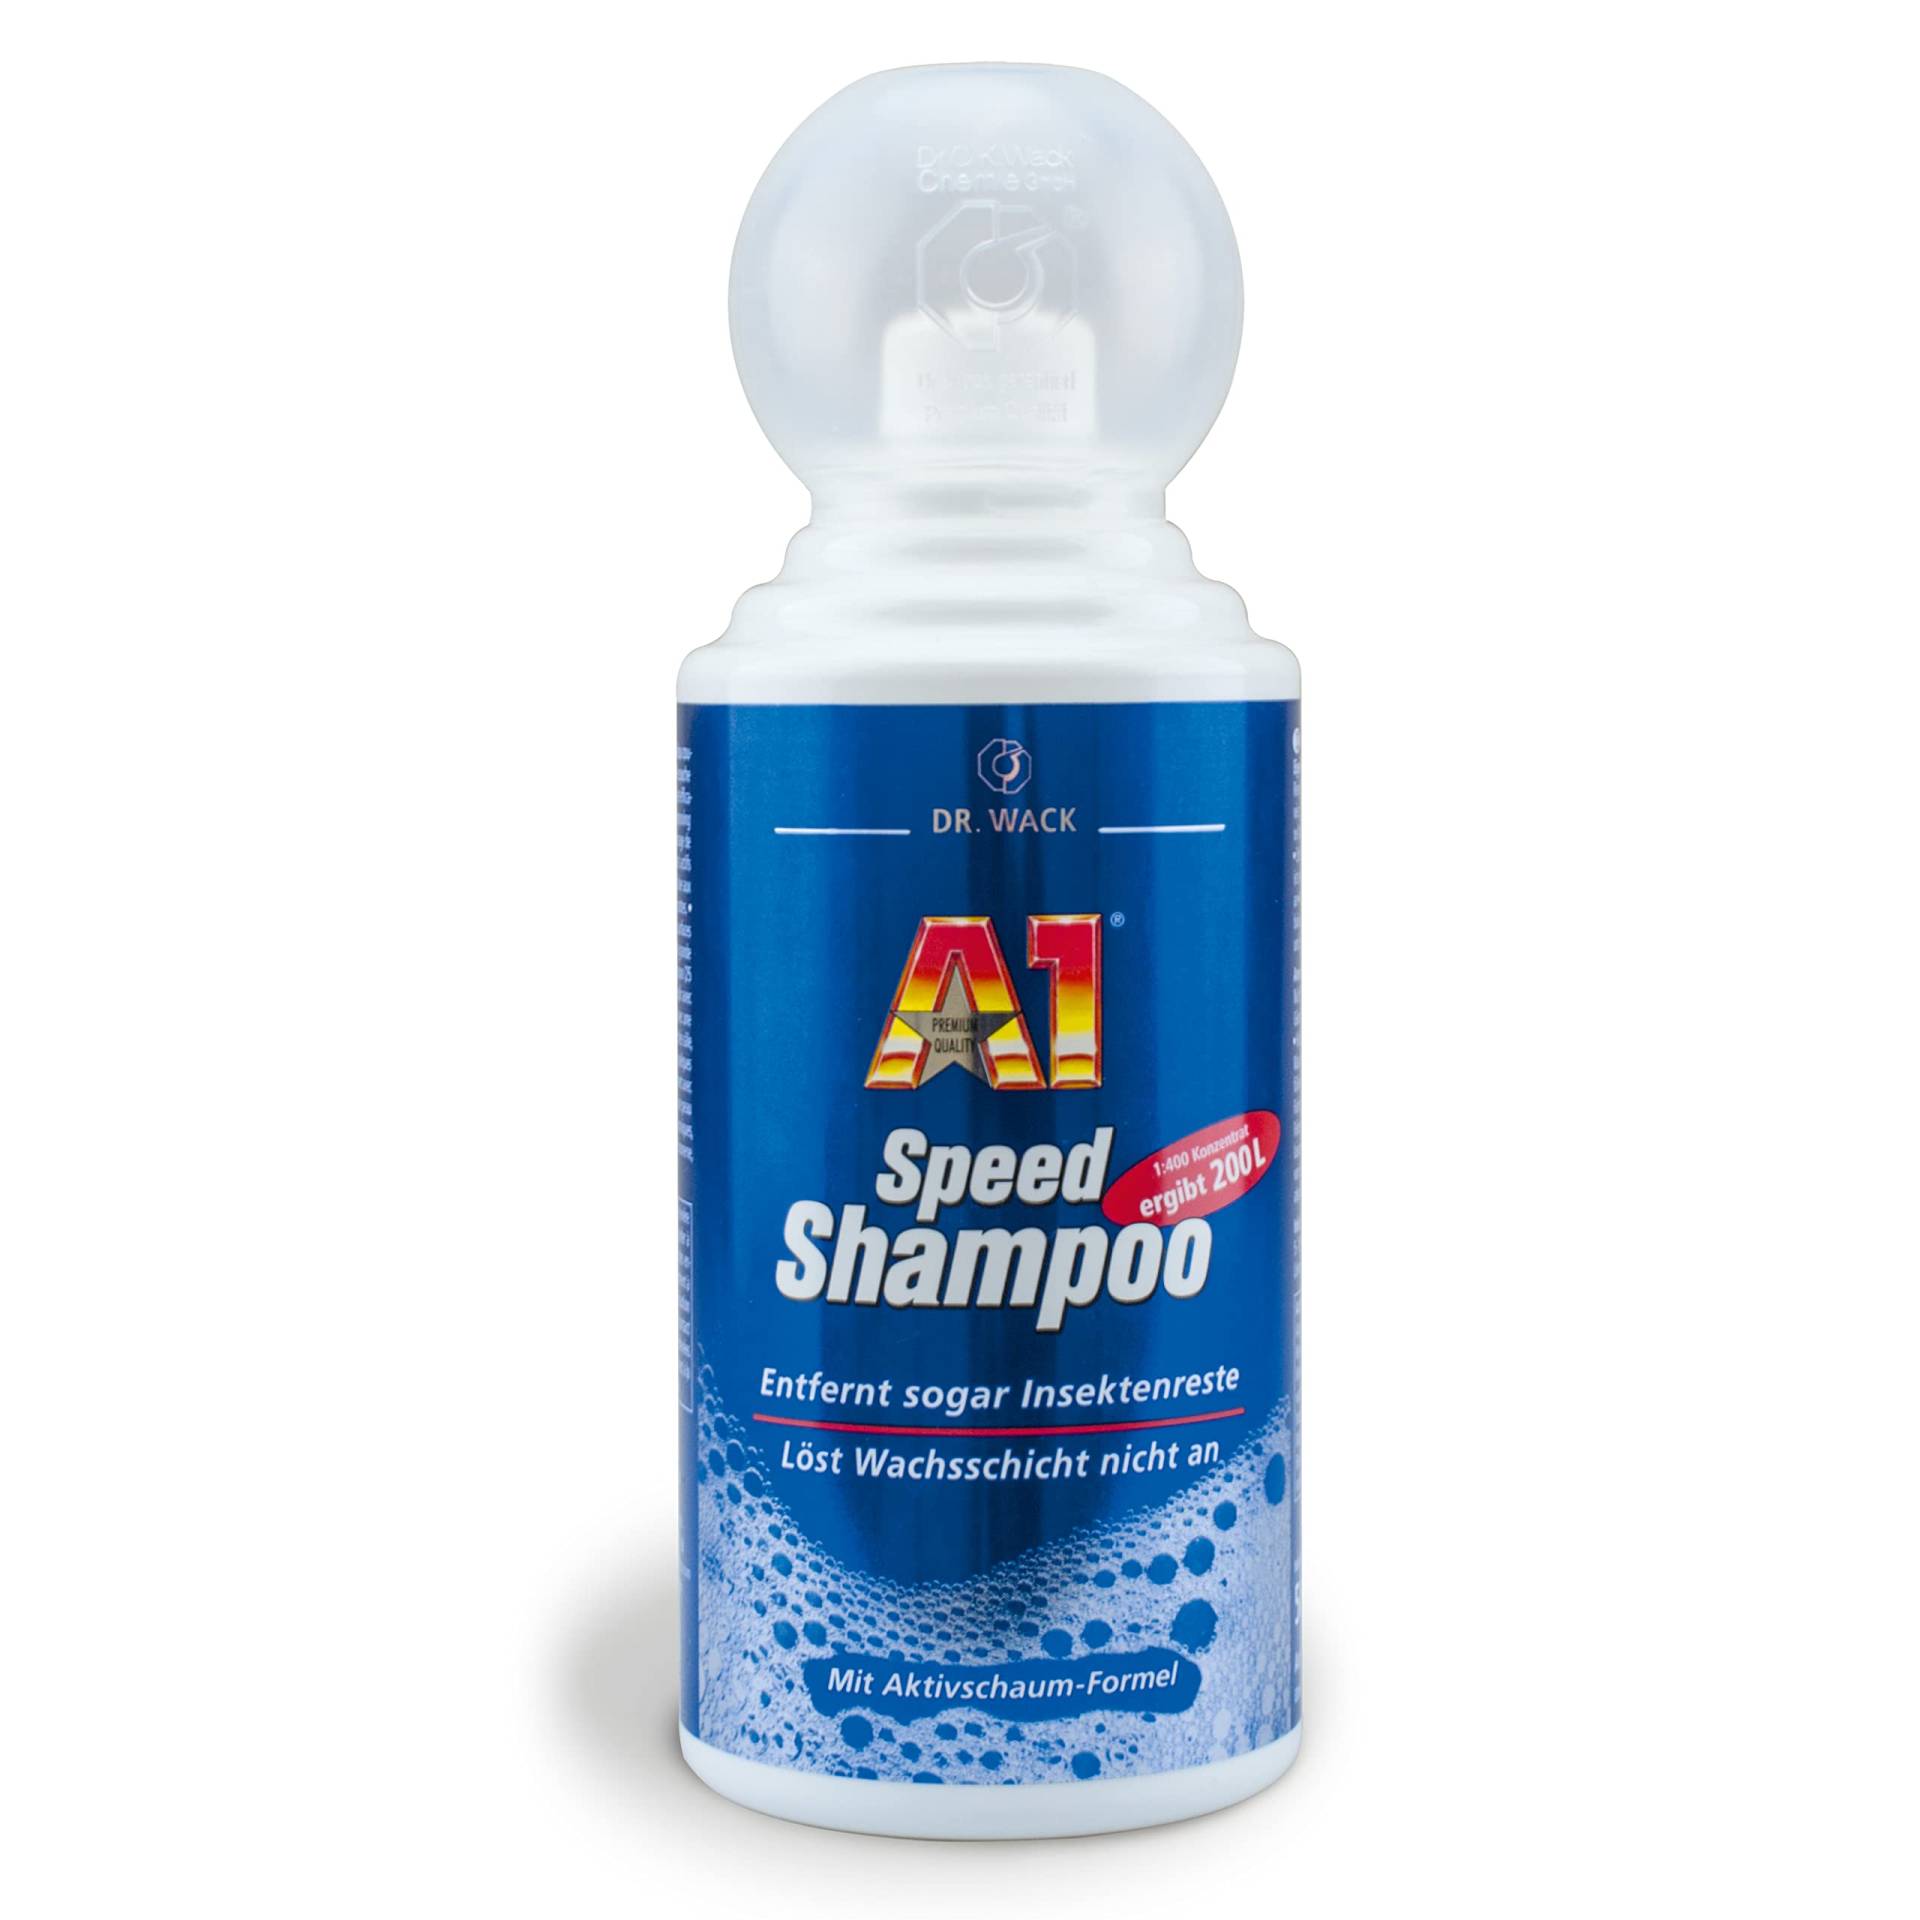 Dr. Wack – A1 Speed Shampoo 500 ml I Premium Auto-Reiniger für alle Lackarten & Lackzustände I Für eine gründliche & schonende Reinigung I Hochwertige Autopflege – Made in Germany von DR. WACK